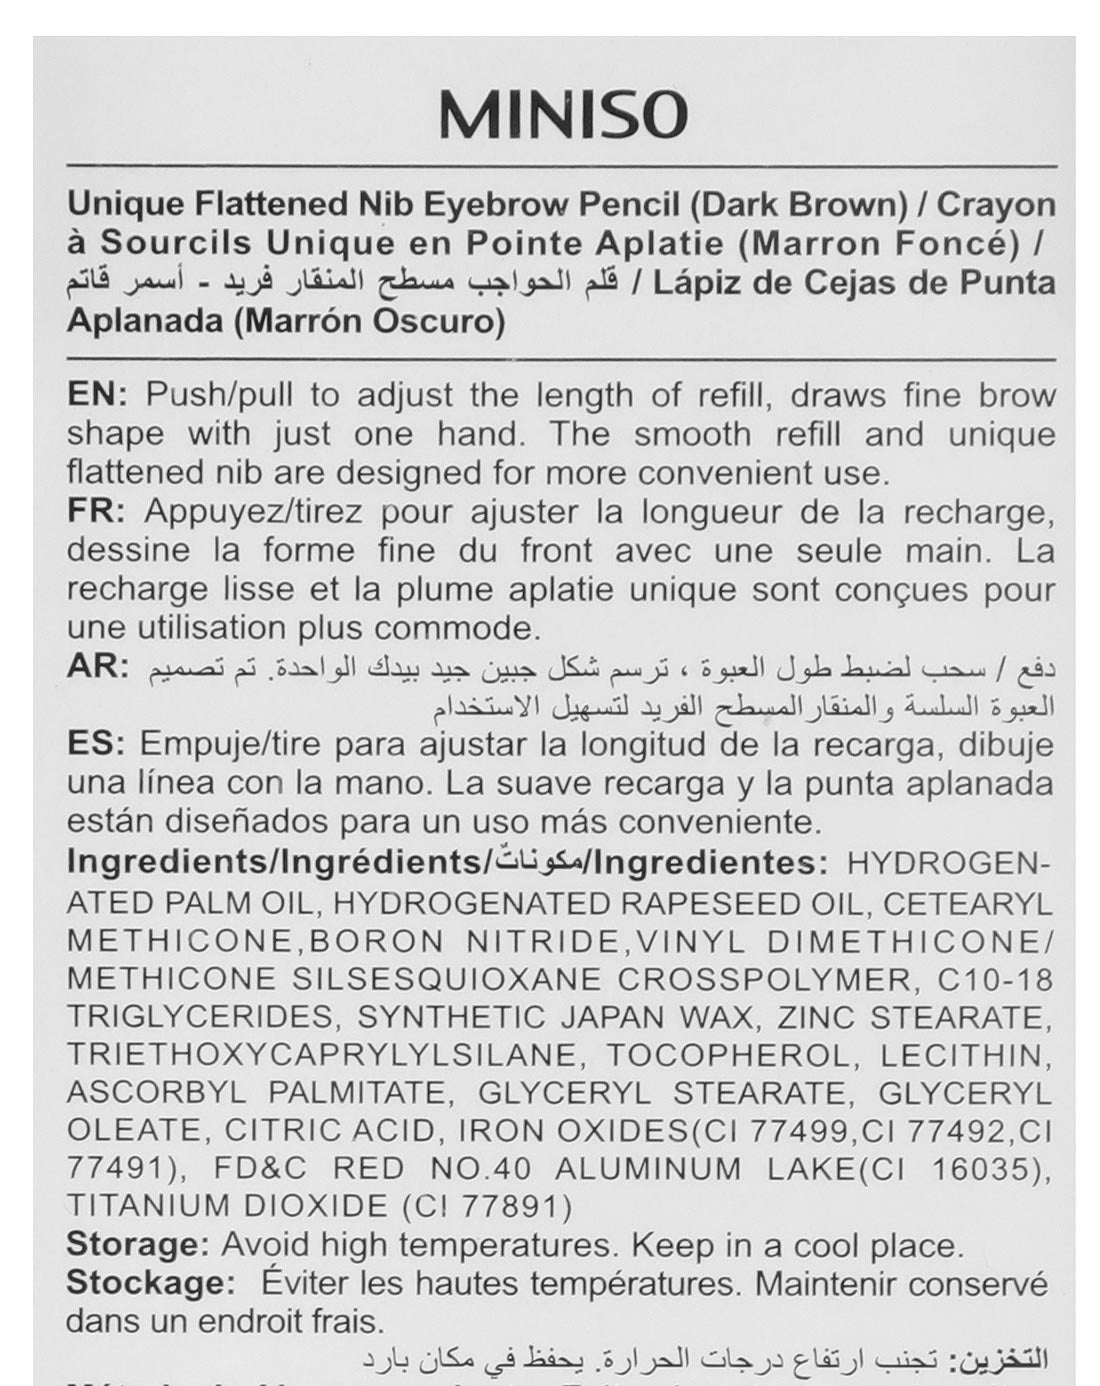 MINISO UNIQUE FLATTENED NIB EYEBROW PENCIL (DARK BROWN) 2007813112102 EYEBROW PENCIL